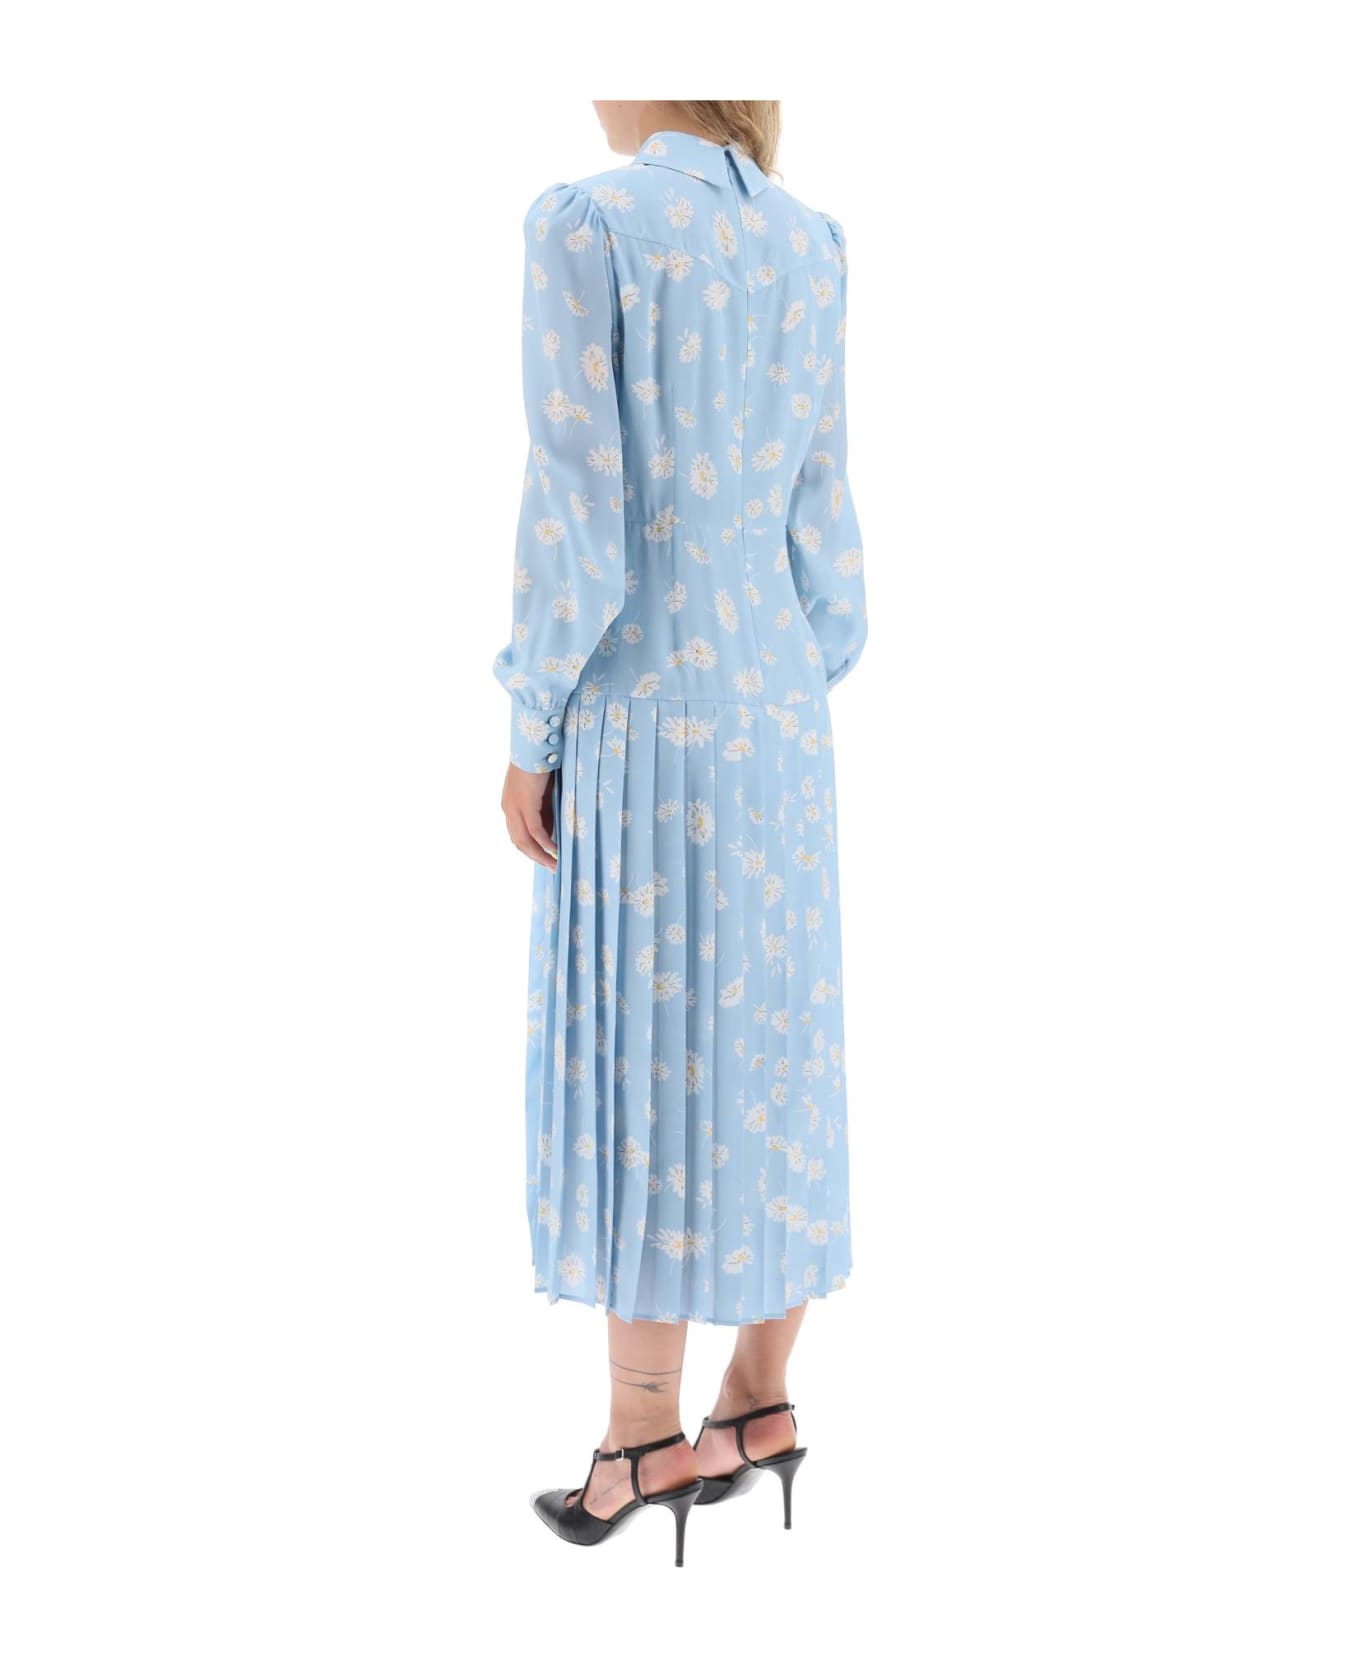 Alessandra Rich Crepe De Chine Shirt Dress With Daisy Motif - PALE BLUE (Light blue)